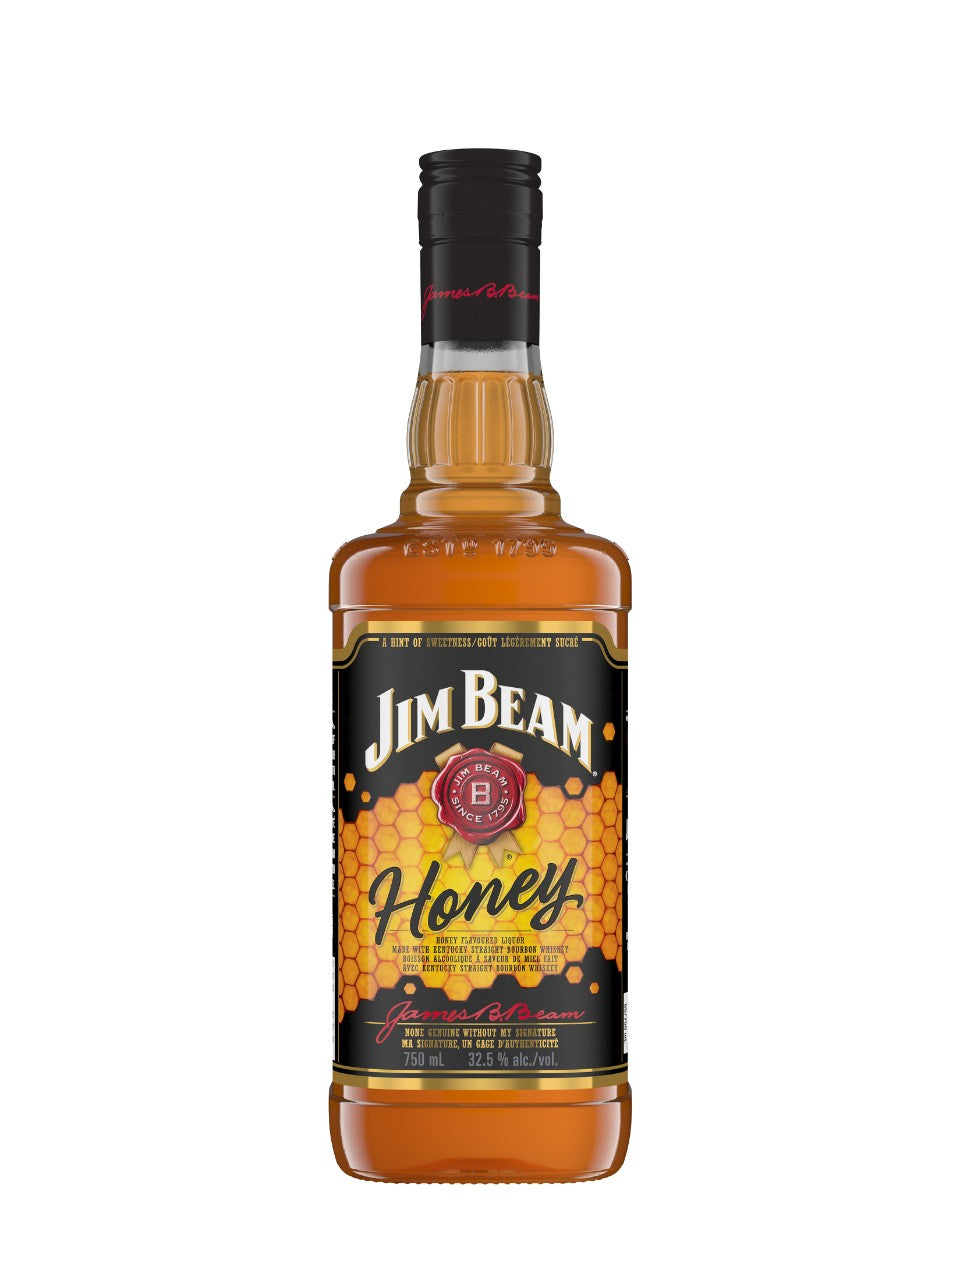 JIM BEAM HONEY (32.5%) 750mL